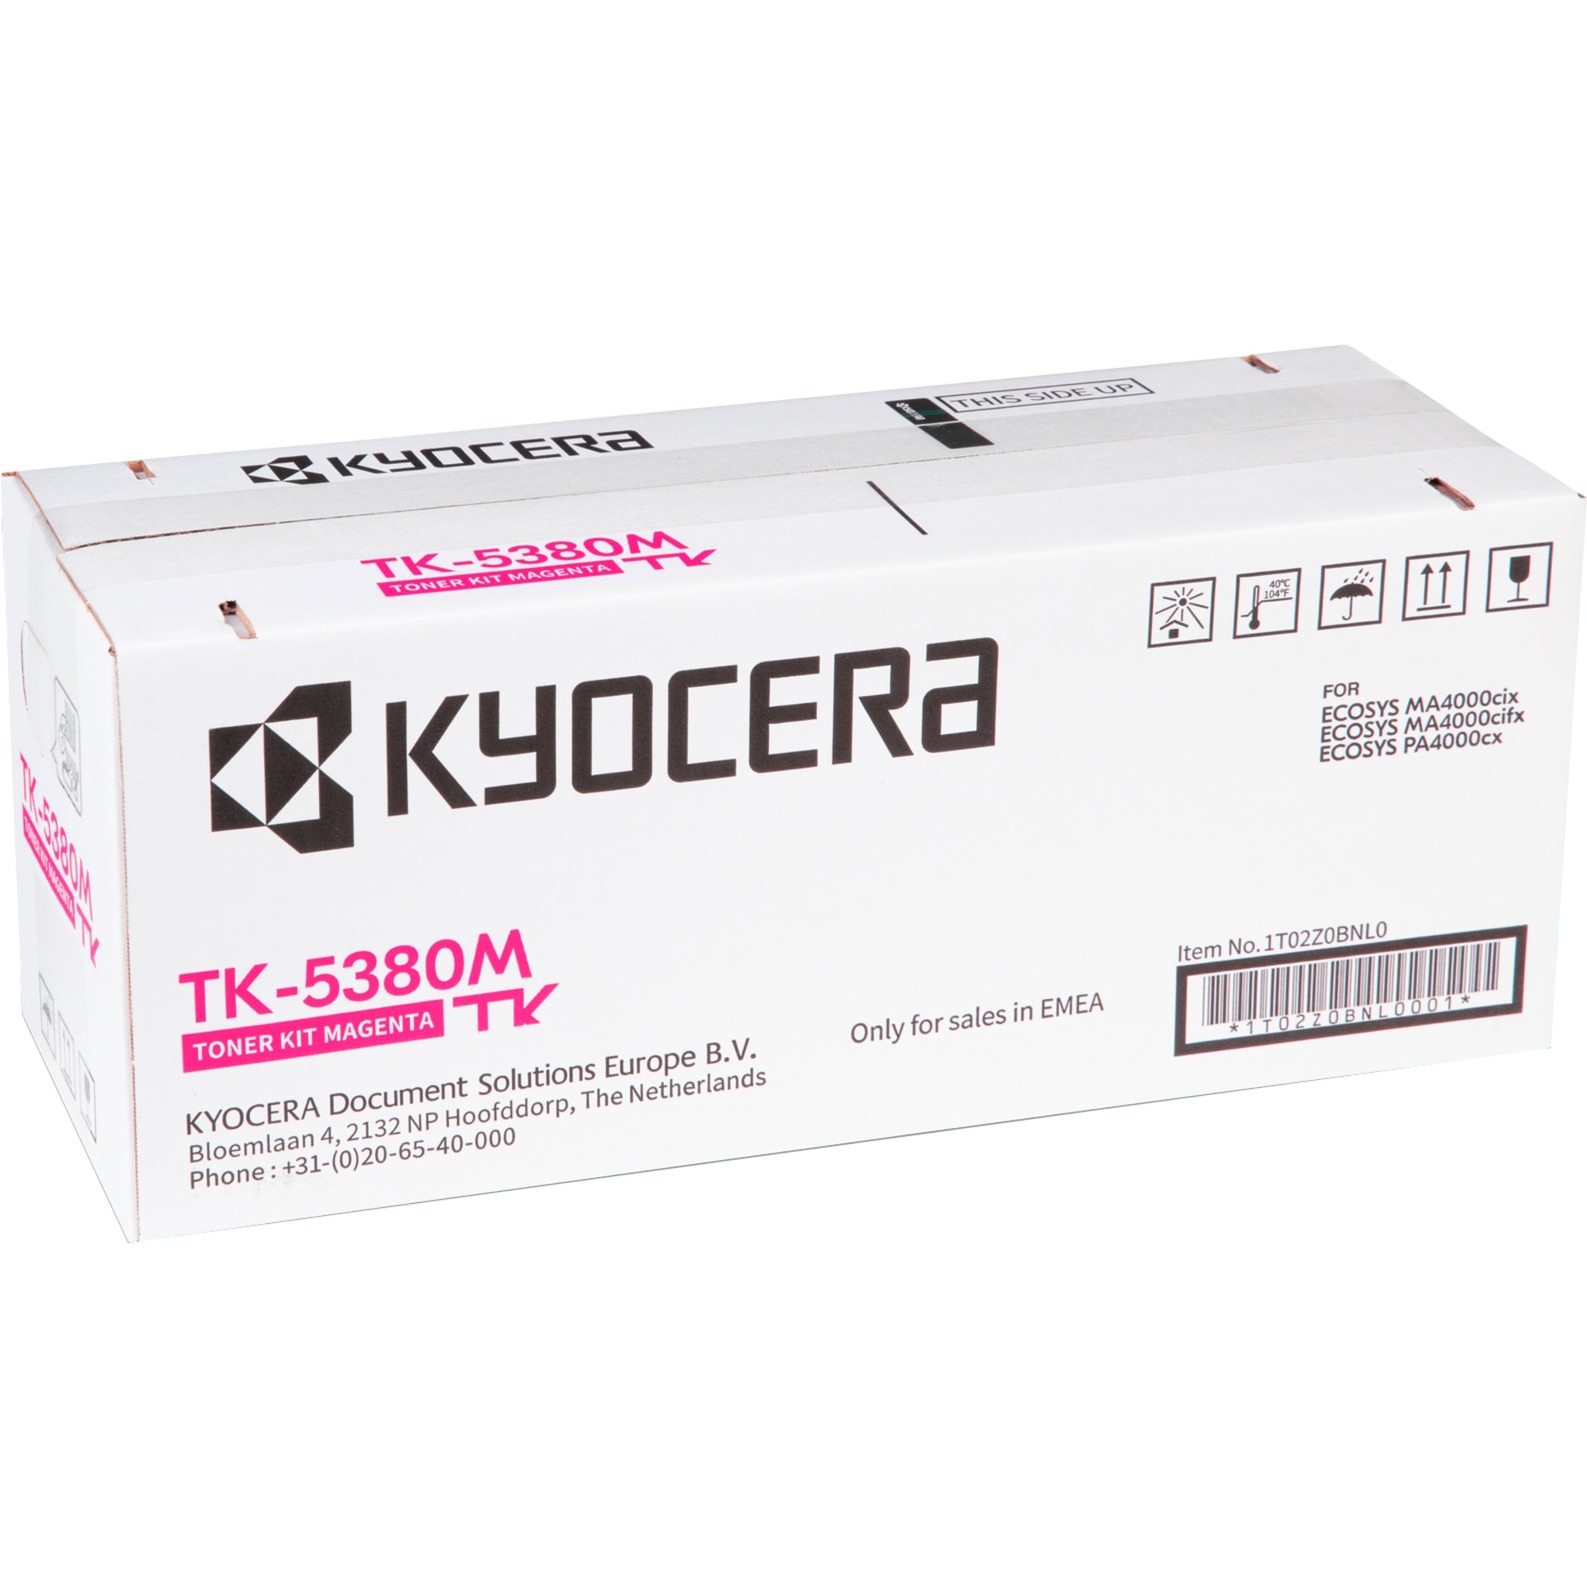 Toner magenta TK-5380M von Kyocera